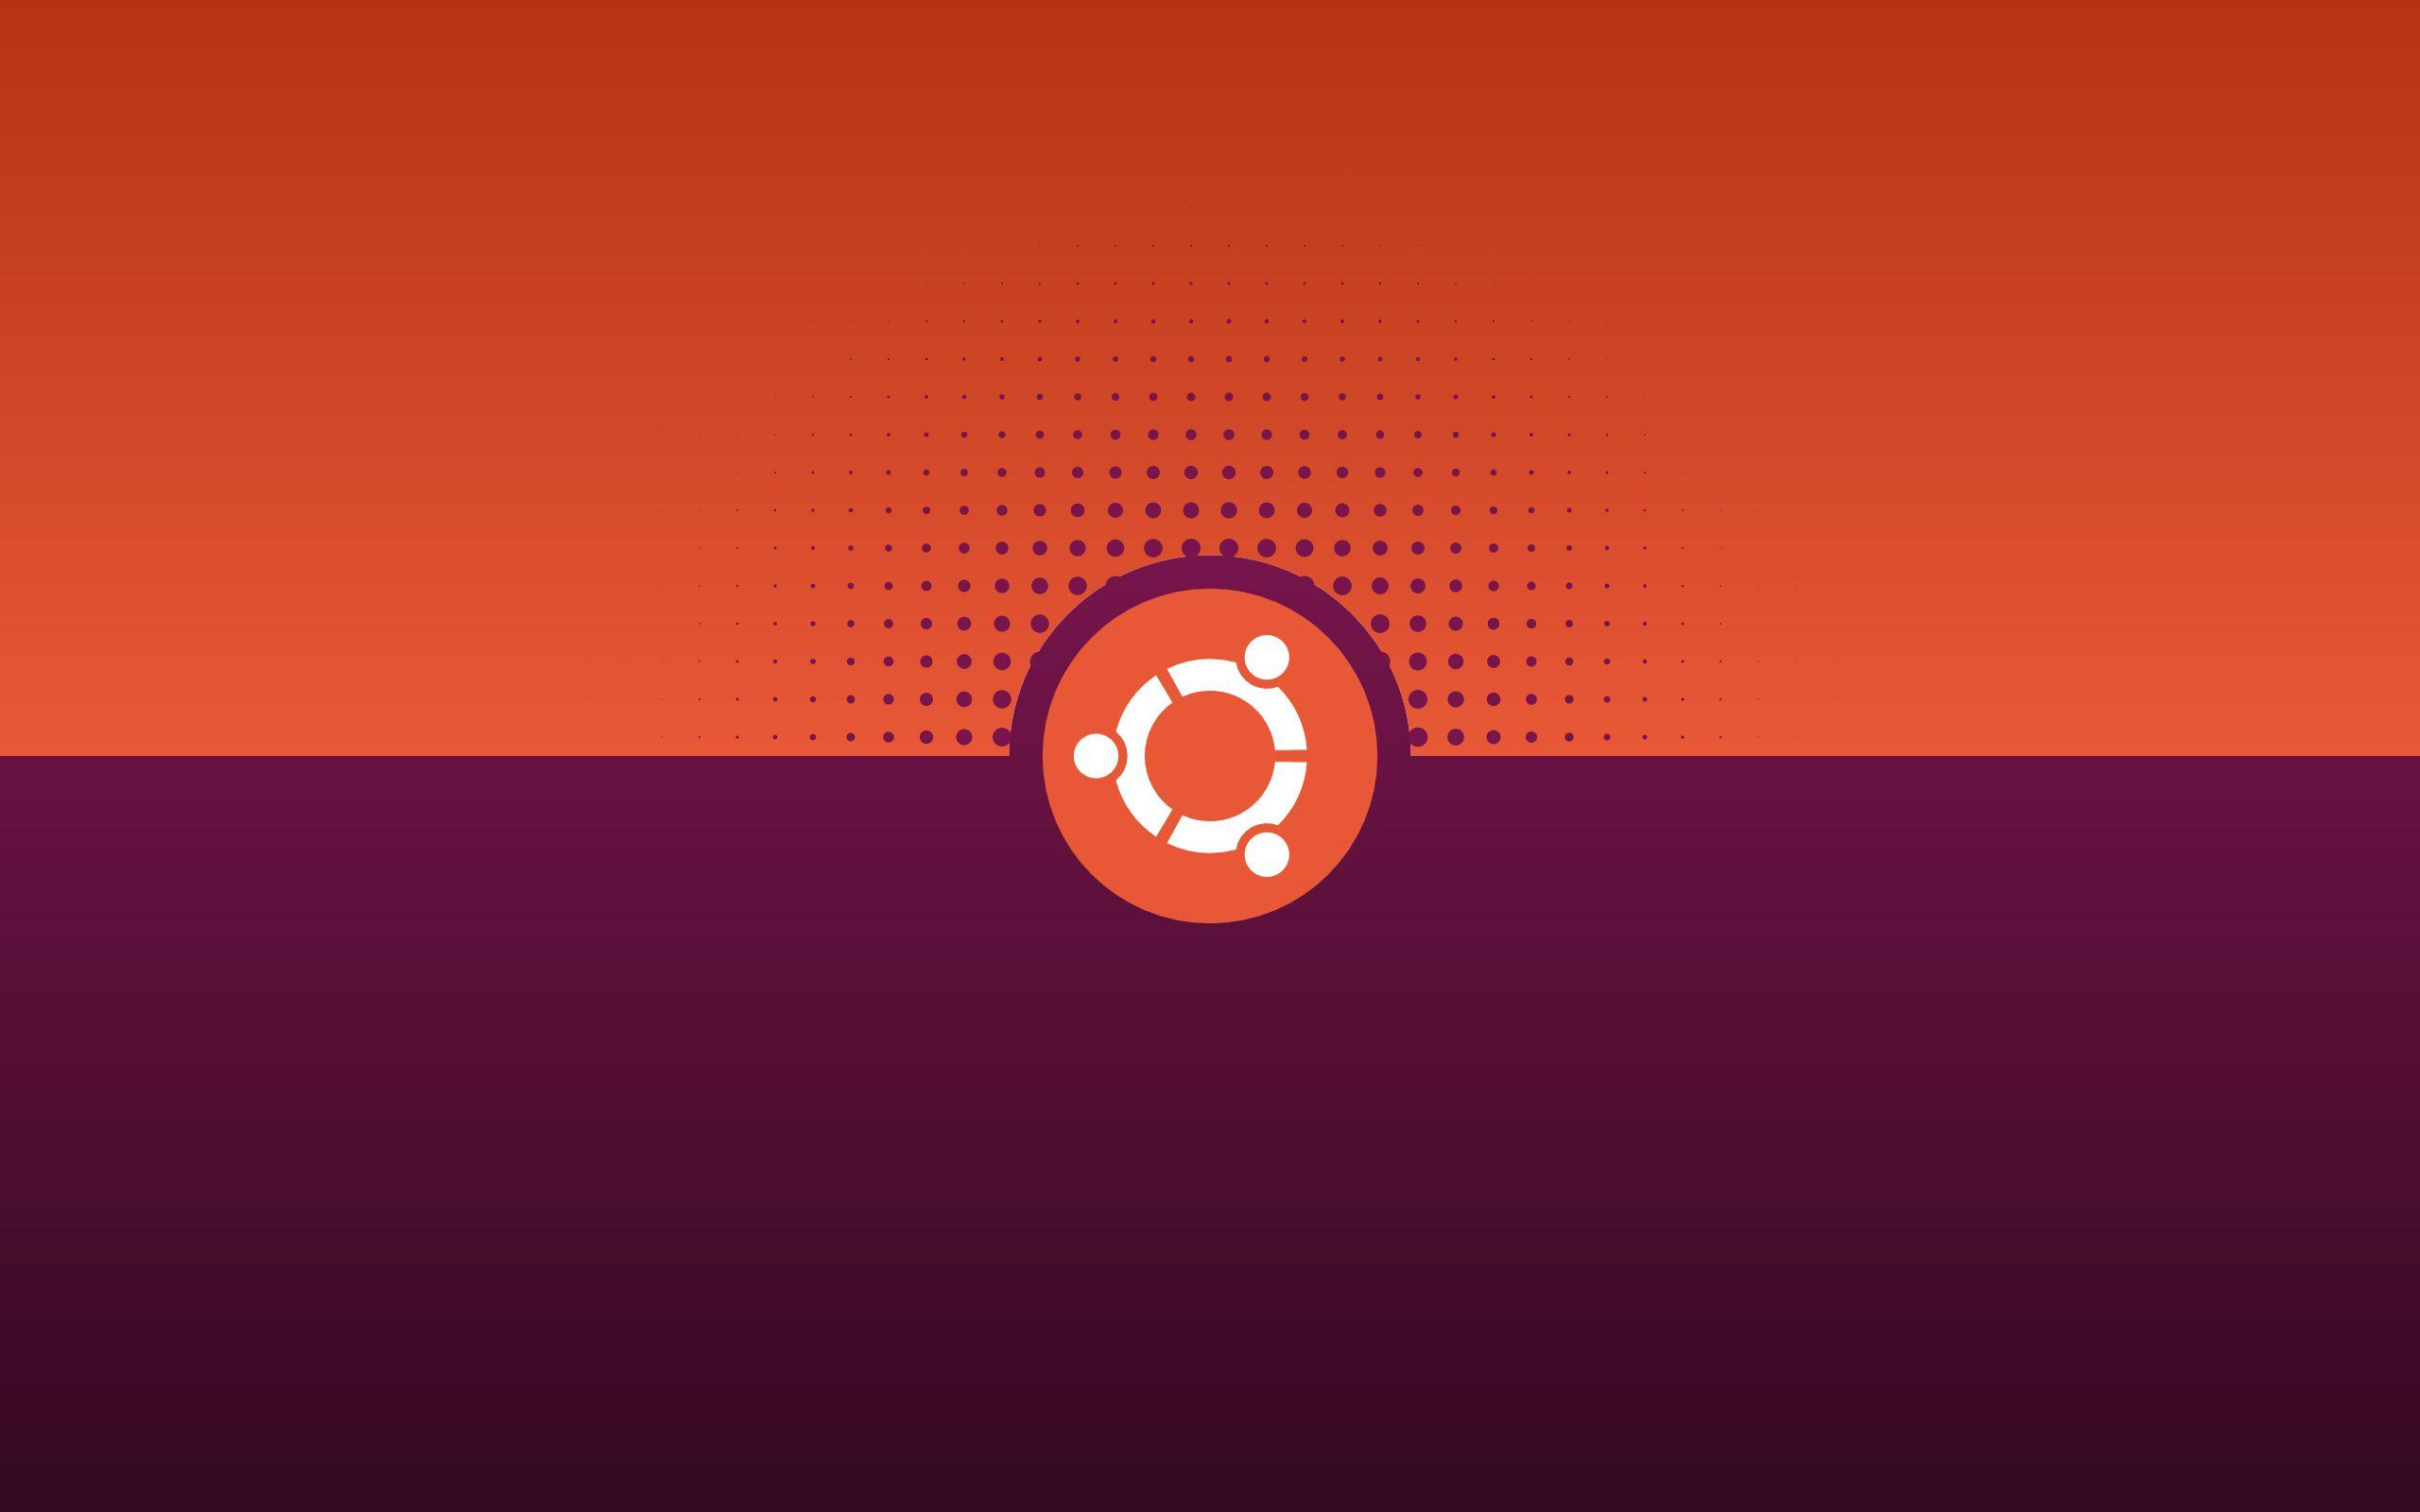 Gallery: Ubuntu